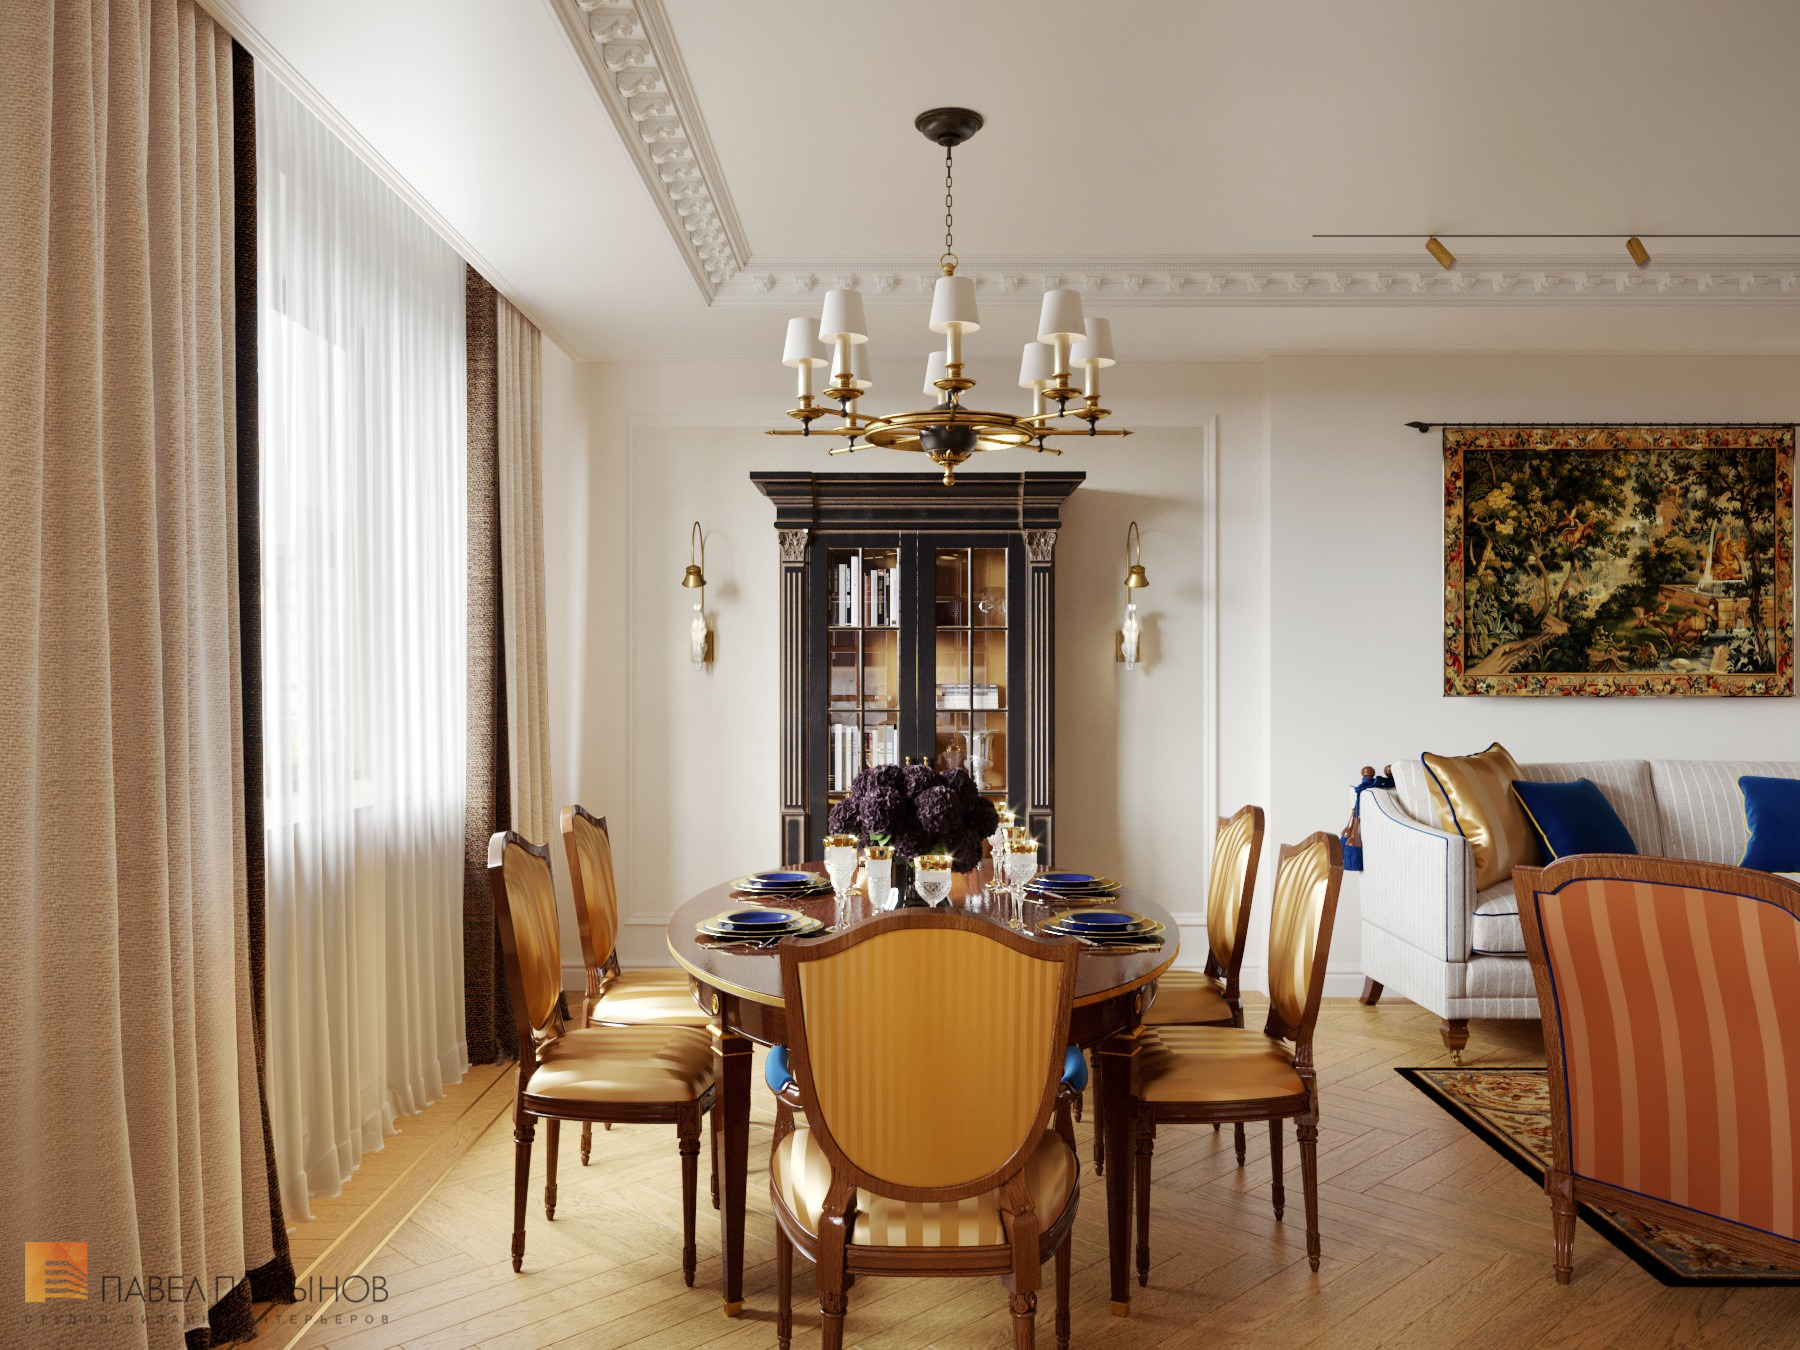 Фото дизайн интерьера гостиной - столовой из проекта «Интерьер квартиры в стиле английской классики, ЖК «Патриот», 124 кв.м.»